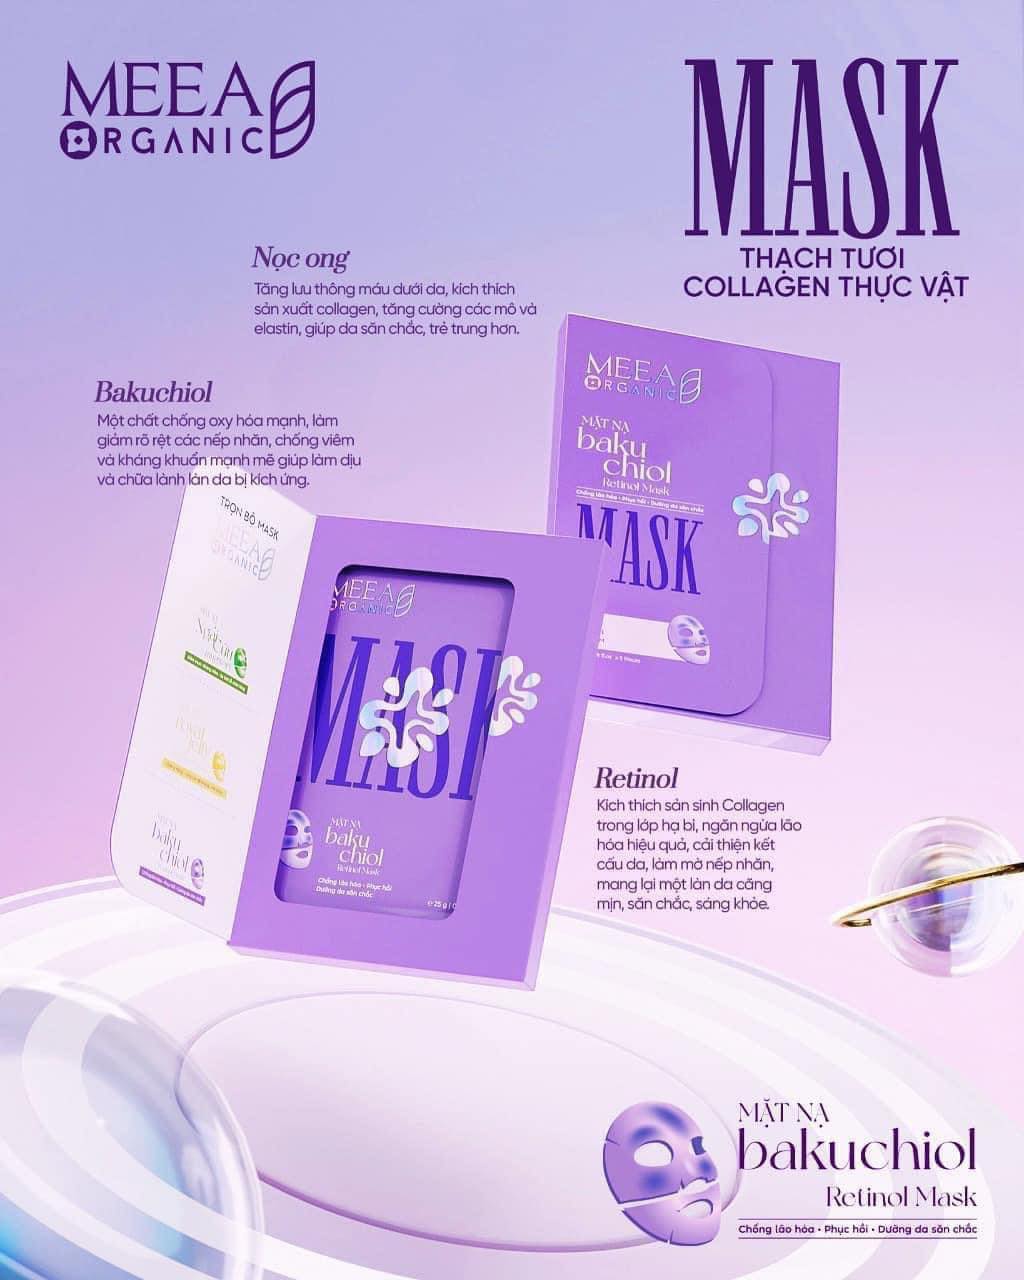 Mặt Nạ Mask Thạch Tươi Collagen Thực Vật Chính Hãng MEEA - Meea Organic dưỡng da hiệu quả